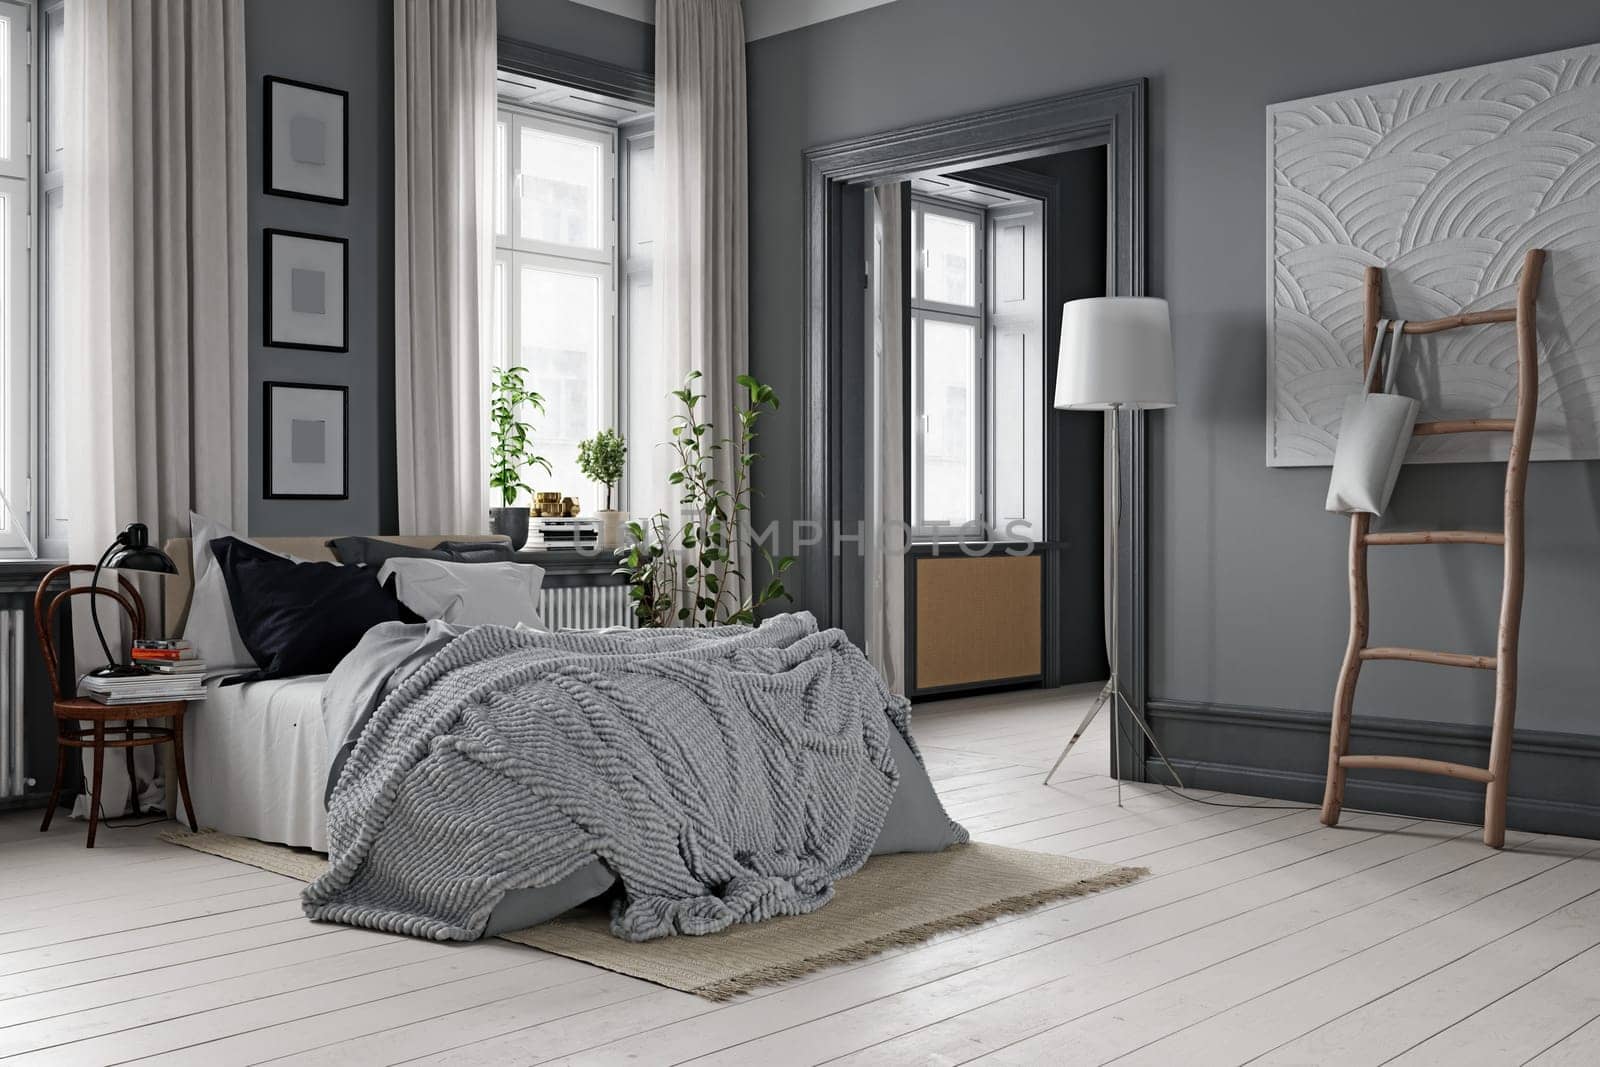 Modern cozy bedroom interior. Render 3D